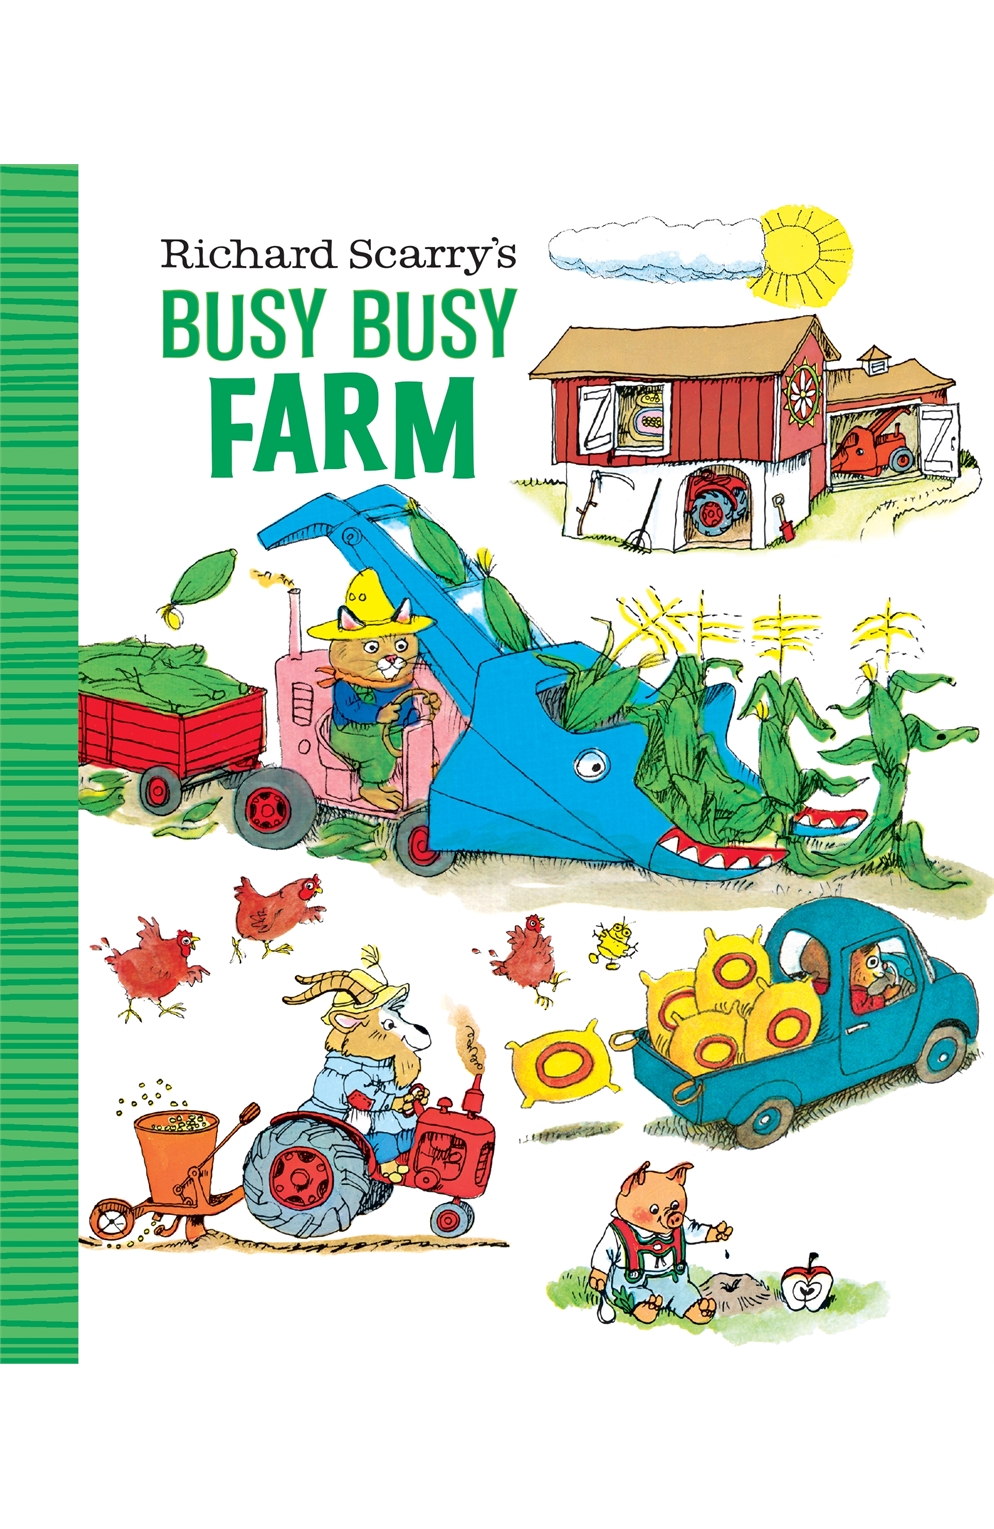 Richard Scarry's Busy Busy Farm